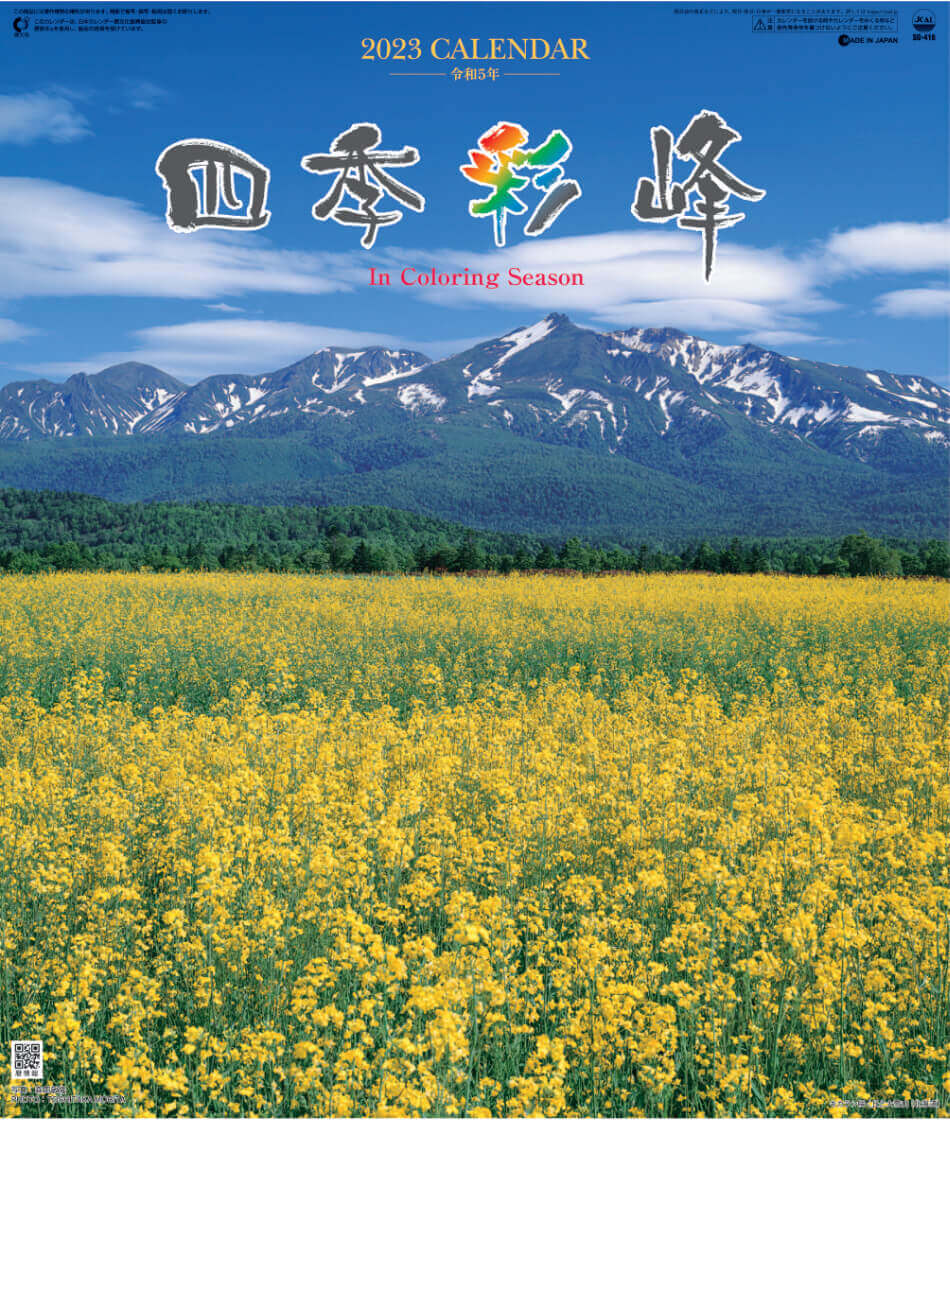  四季彩峰 2023年カレンダーの画像